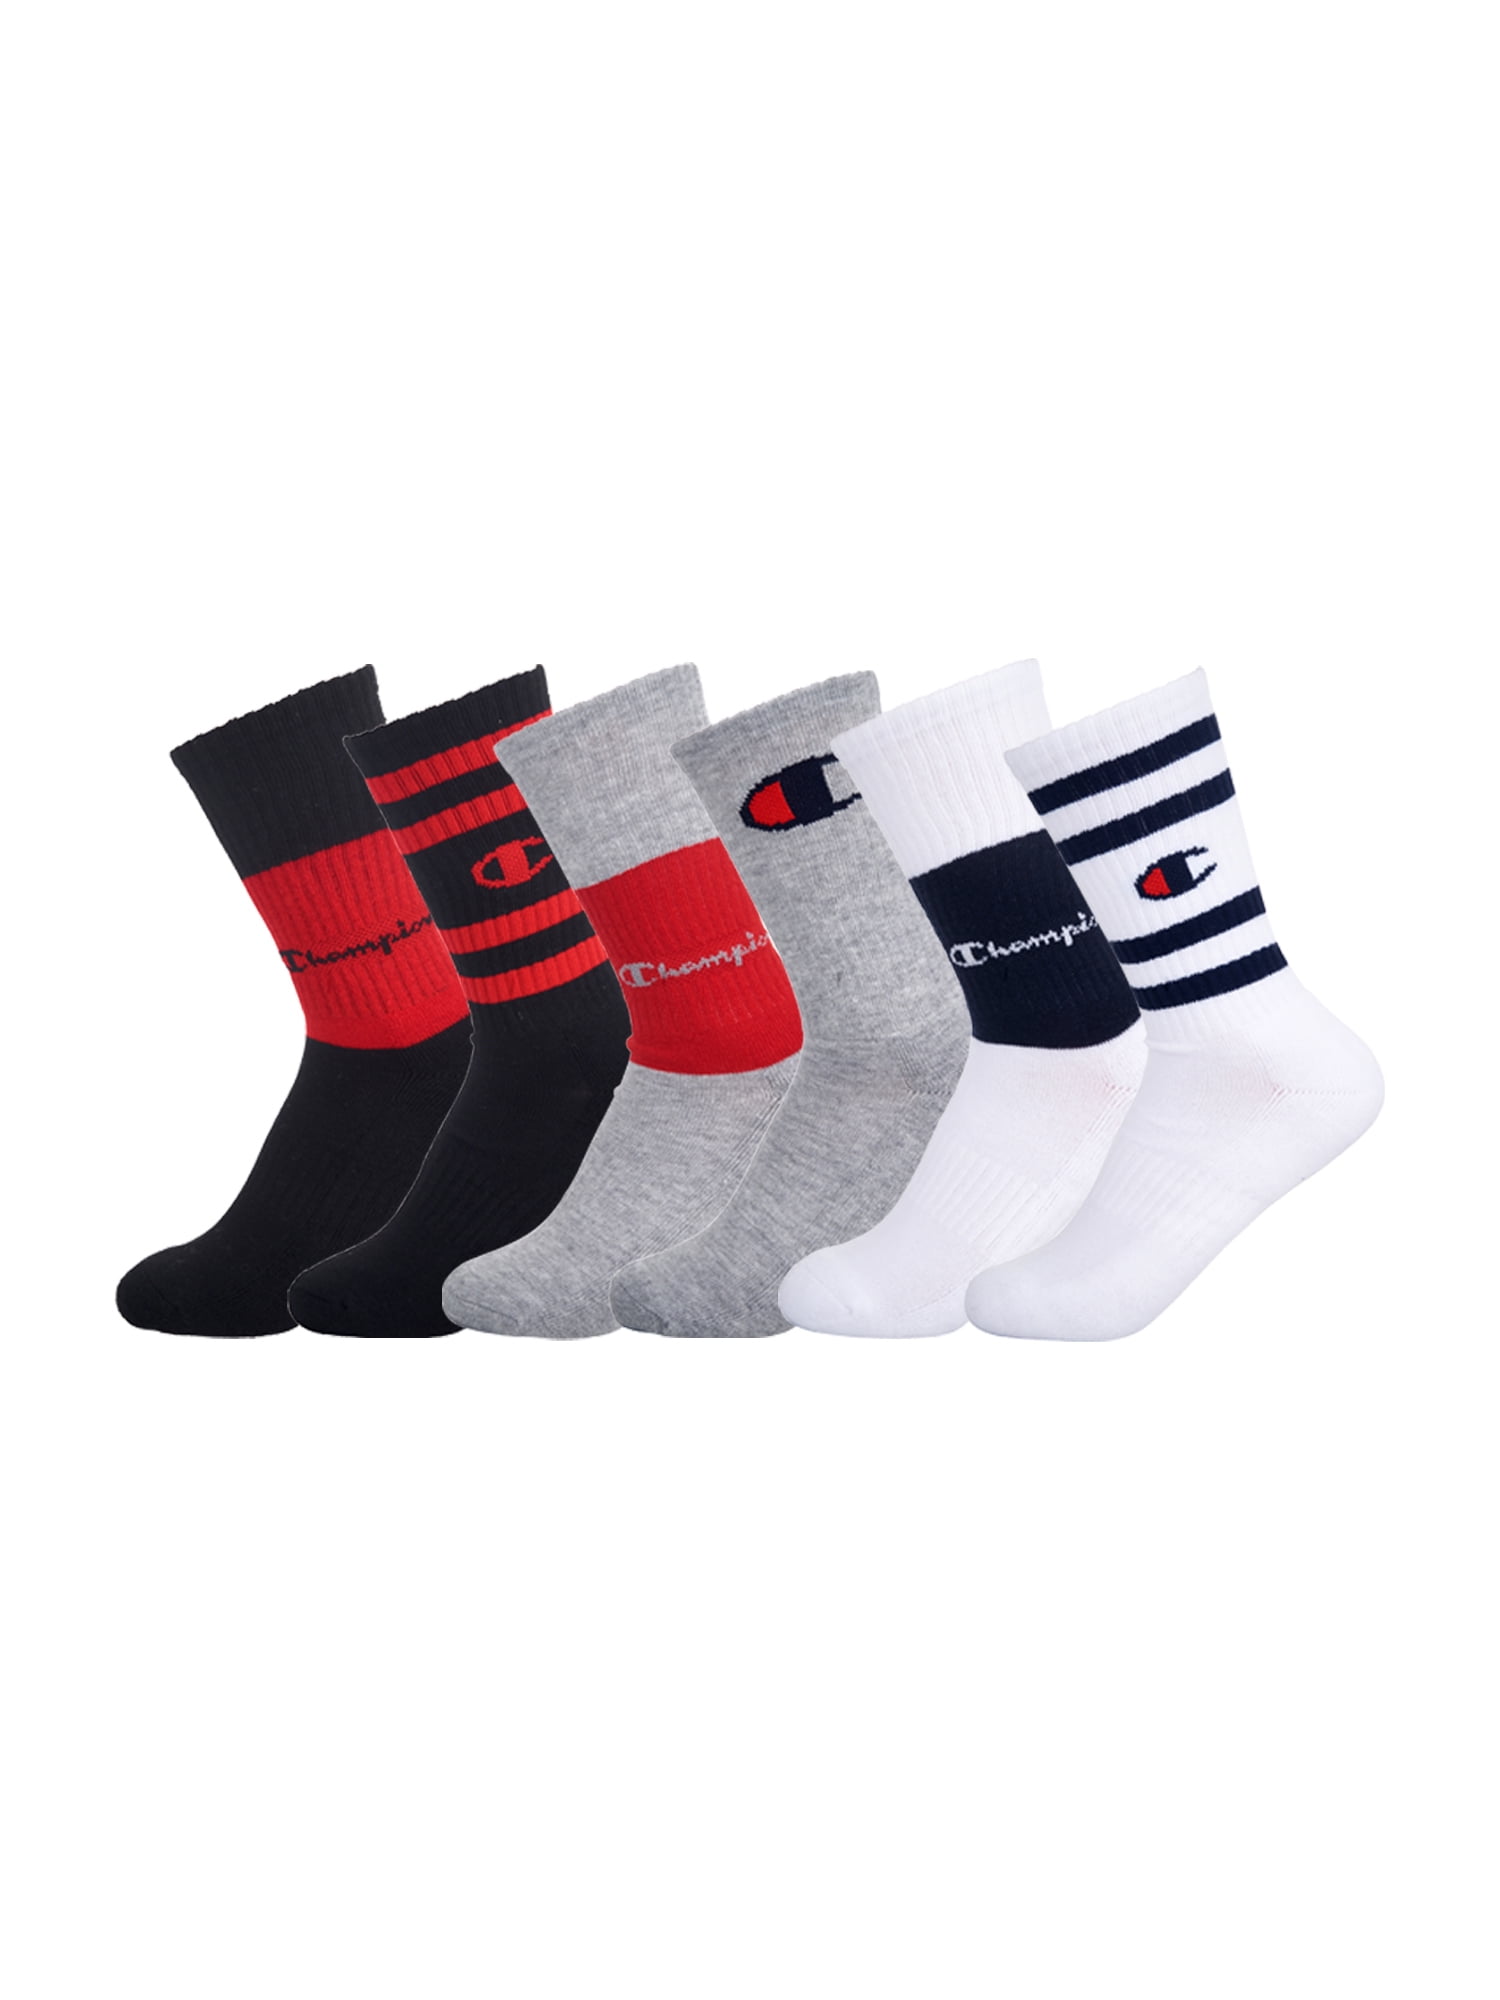 7 Crew Socks, Champion - 6 Socks, Unisex Pack 11 Sizes